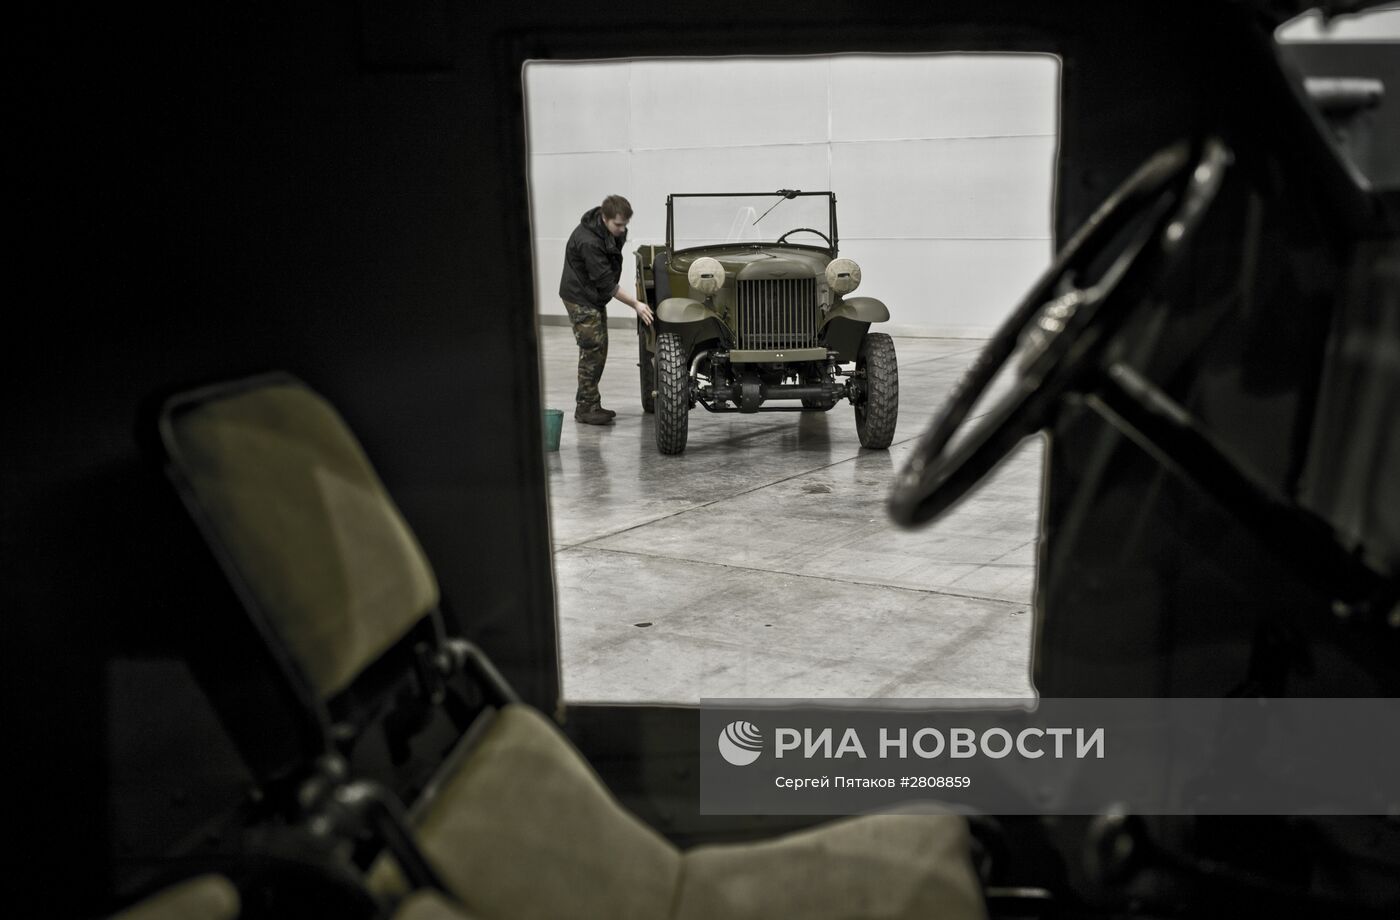 Подготовка к открытию выставки исторической военной техники "Моторы Войны"